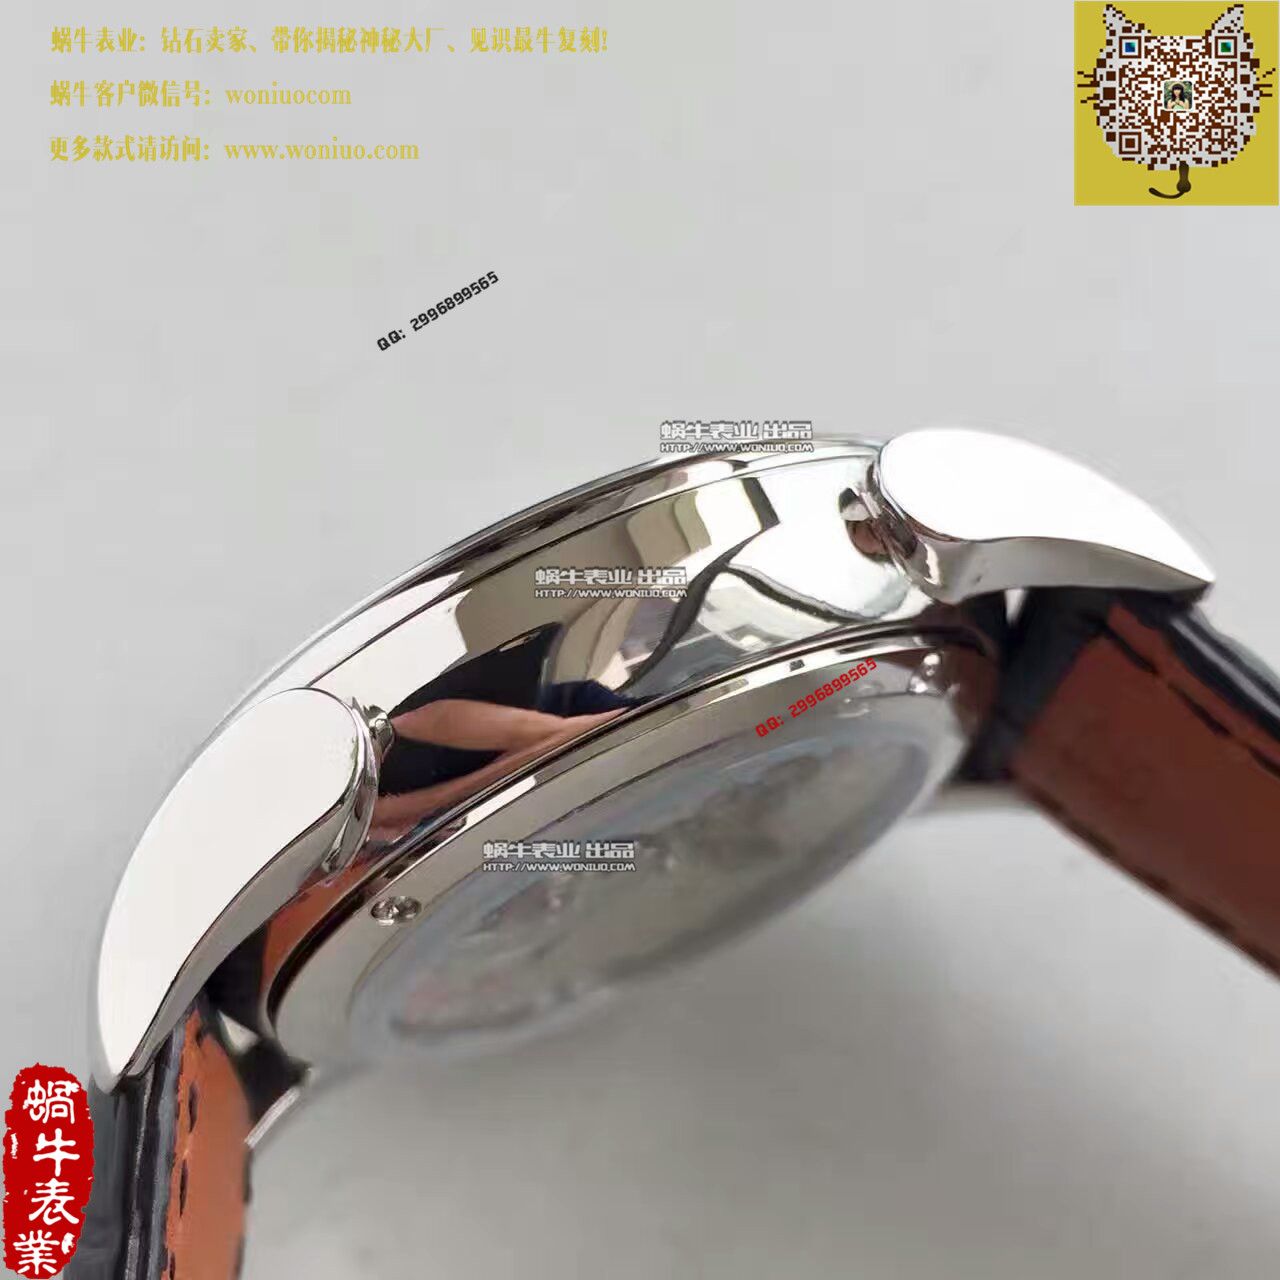 【一比一复刻手表】帕玛强尼Tonda系列特别版镂空限量腕表PFC267-3000600-HA3141腕表 / PM017